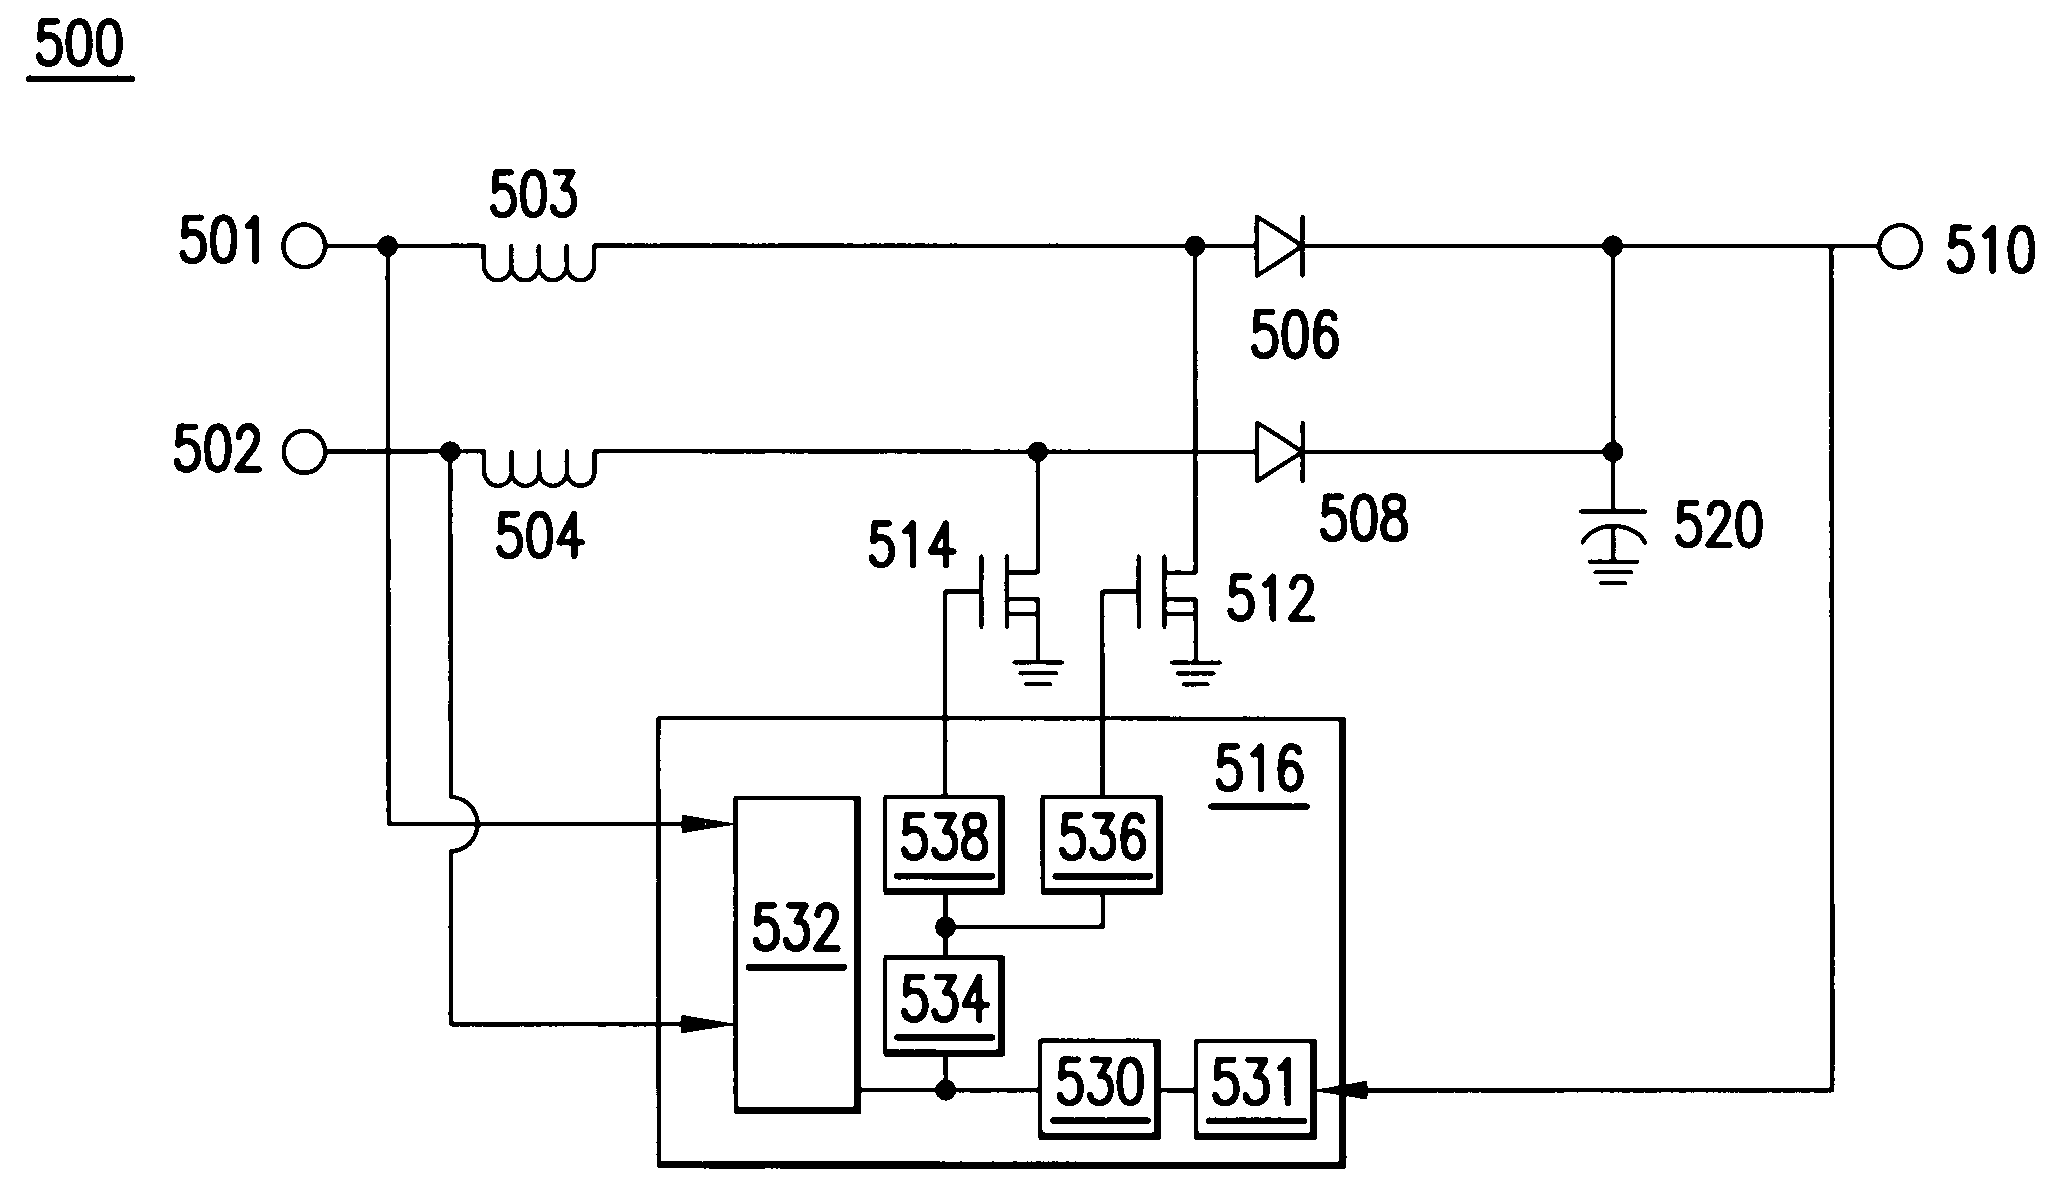 Power factor correction circuits